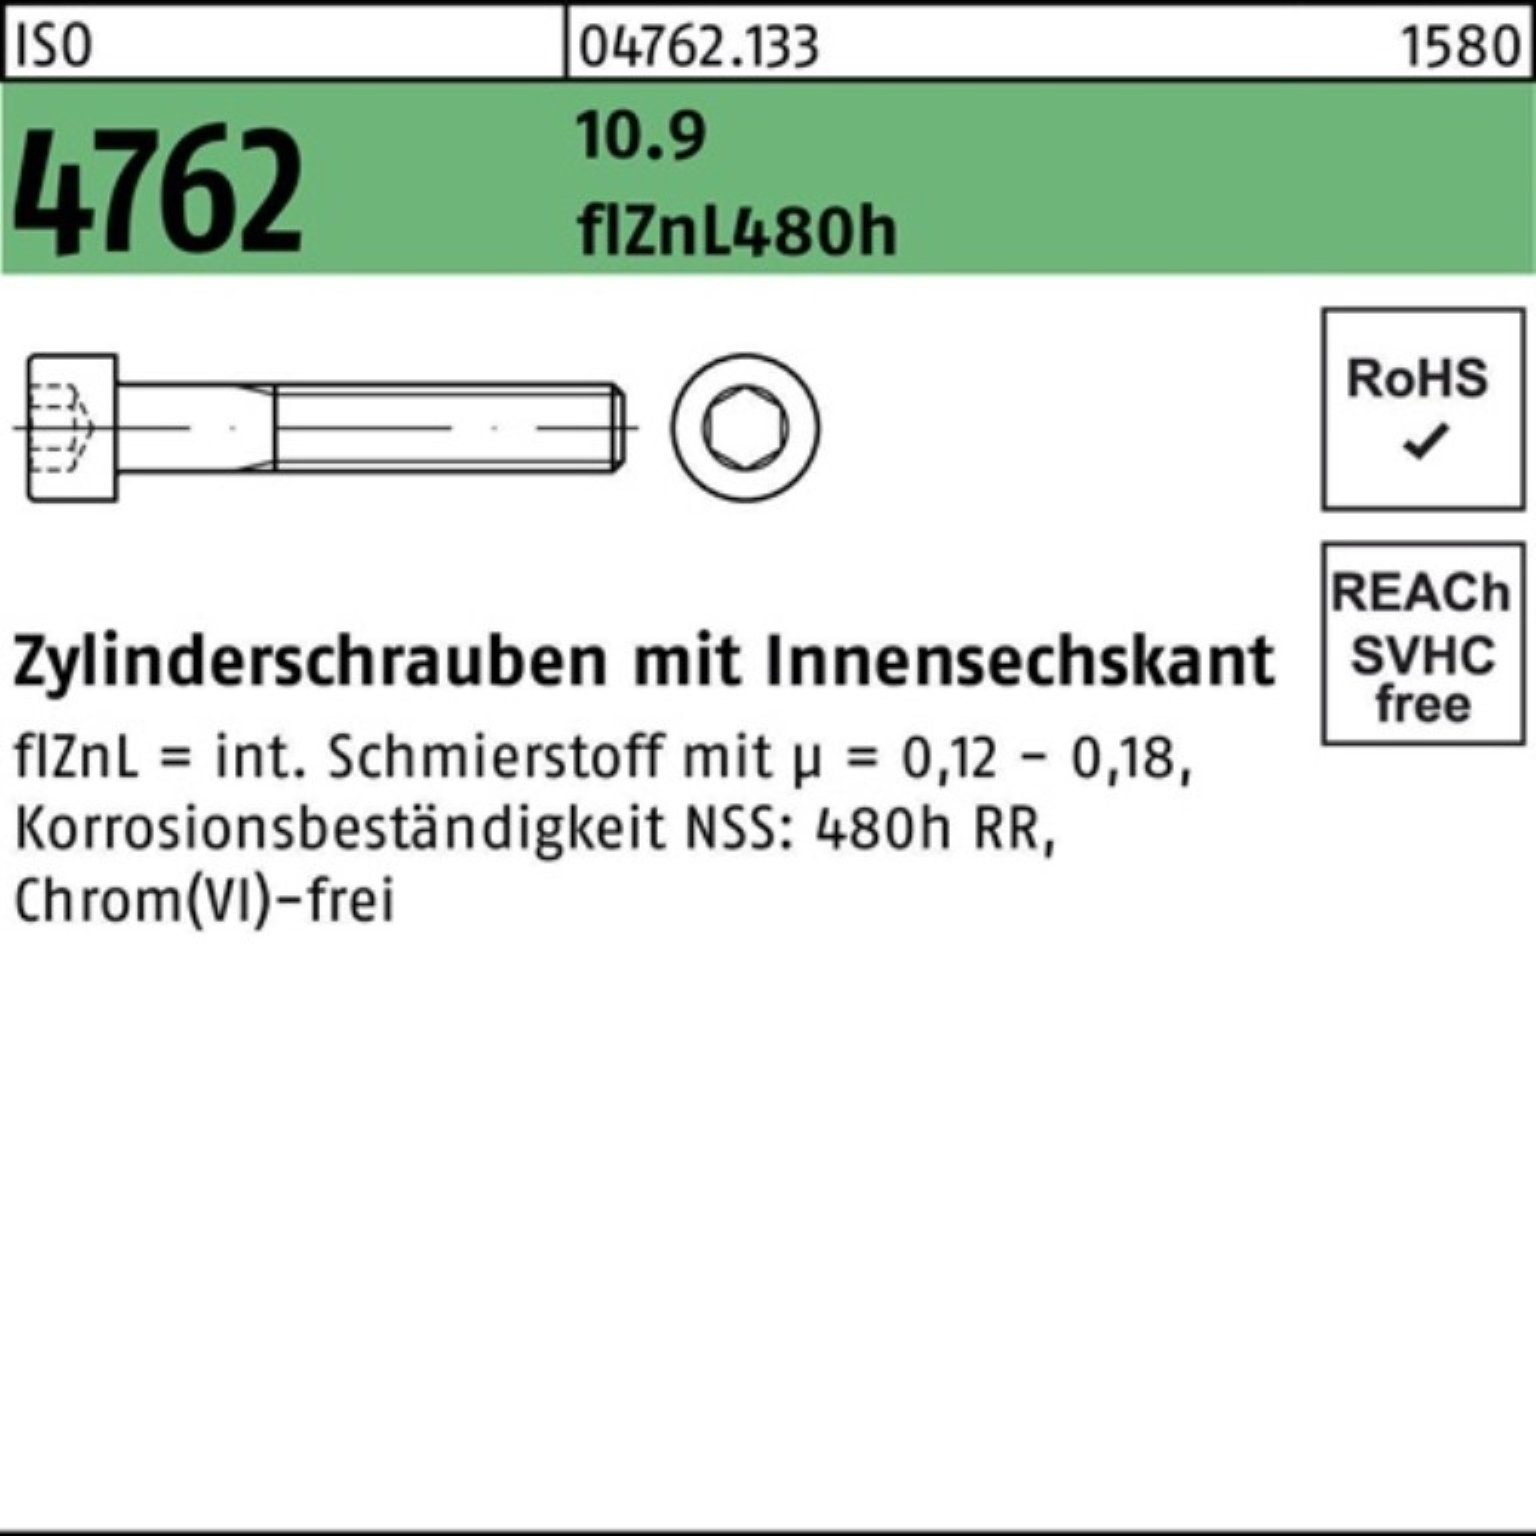 Pack Reyher Zylinderschraube Innen-6kt 200er 4762 ISO 10.9 M5x45 Zylinderschraube zinklamellen